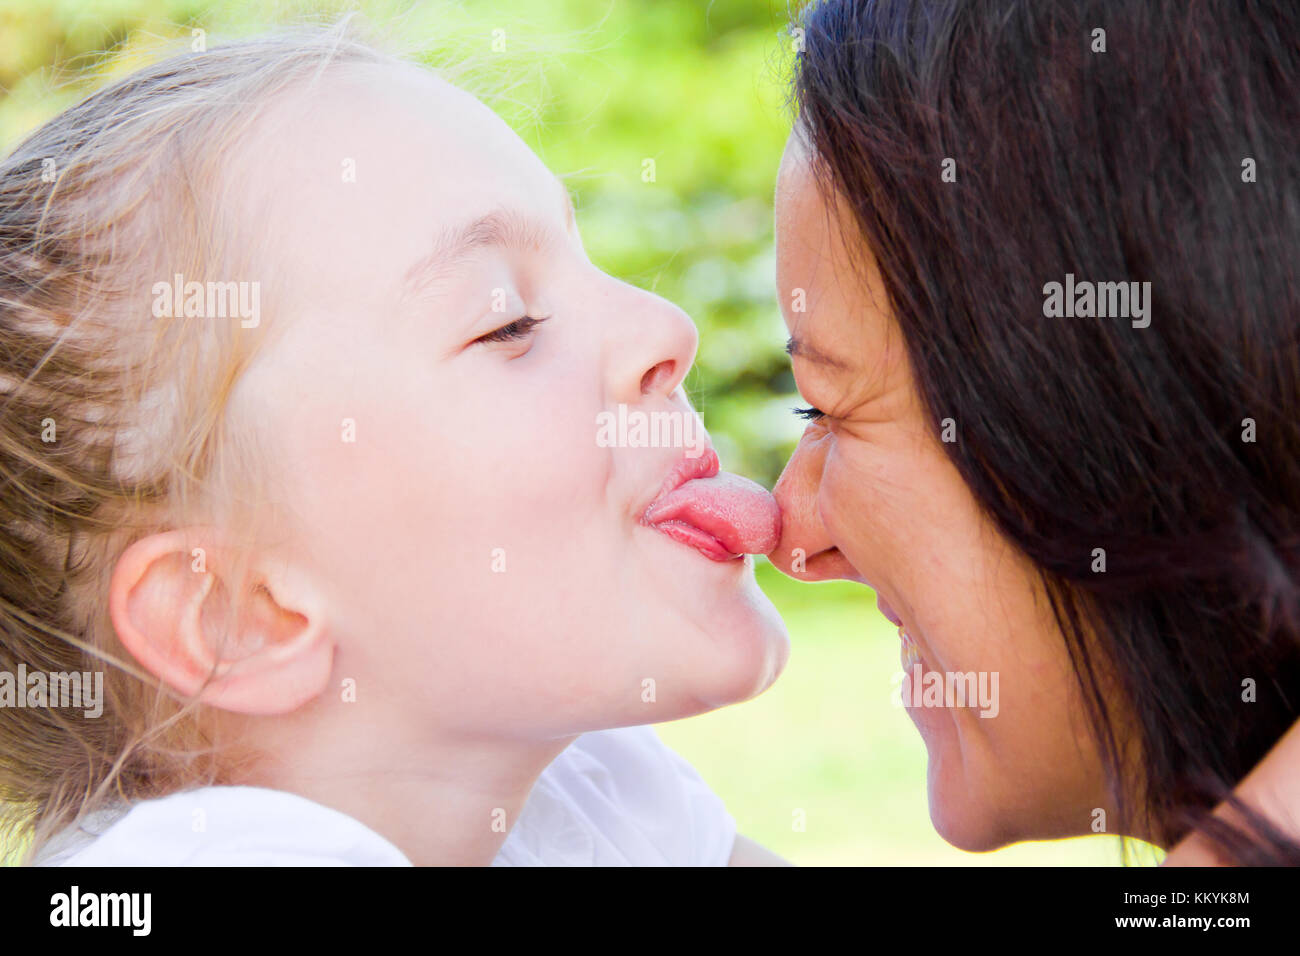 Красиво лижет маме. Мать целует дочь. Мама и дочь поцелуй с языком. Поцелуй мамы и дочери в губы. Мама целует дочку в губы.